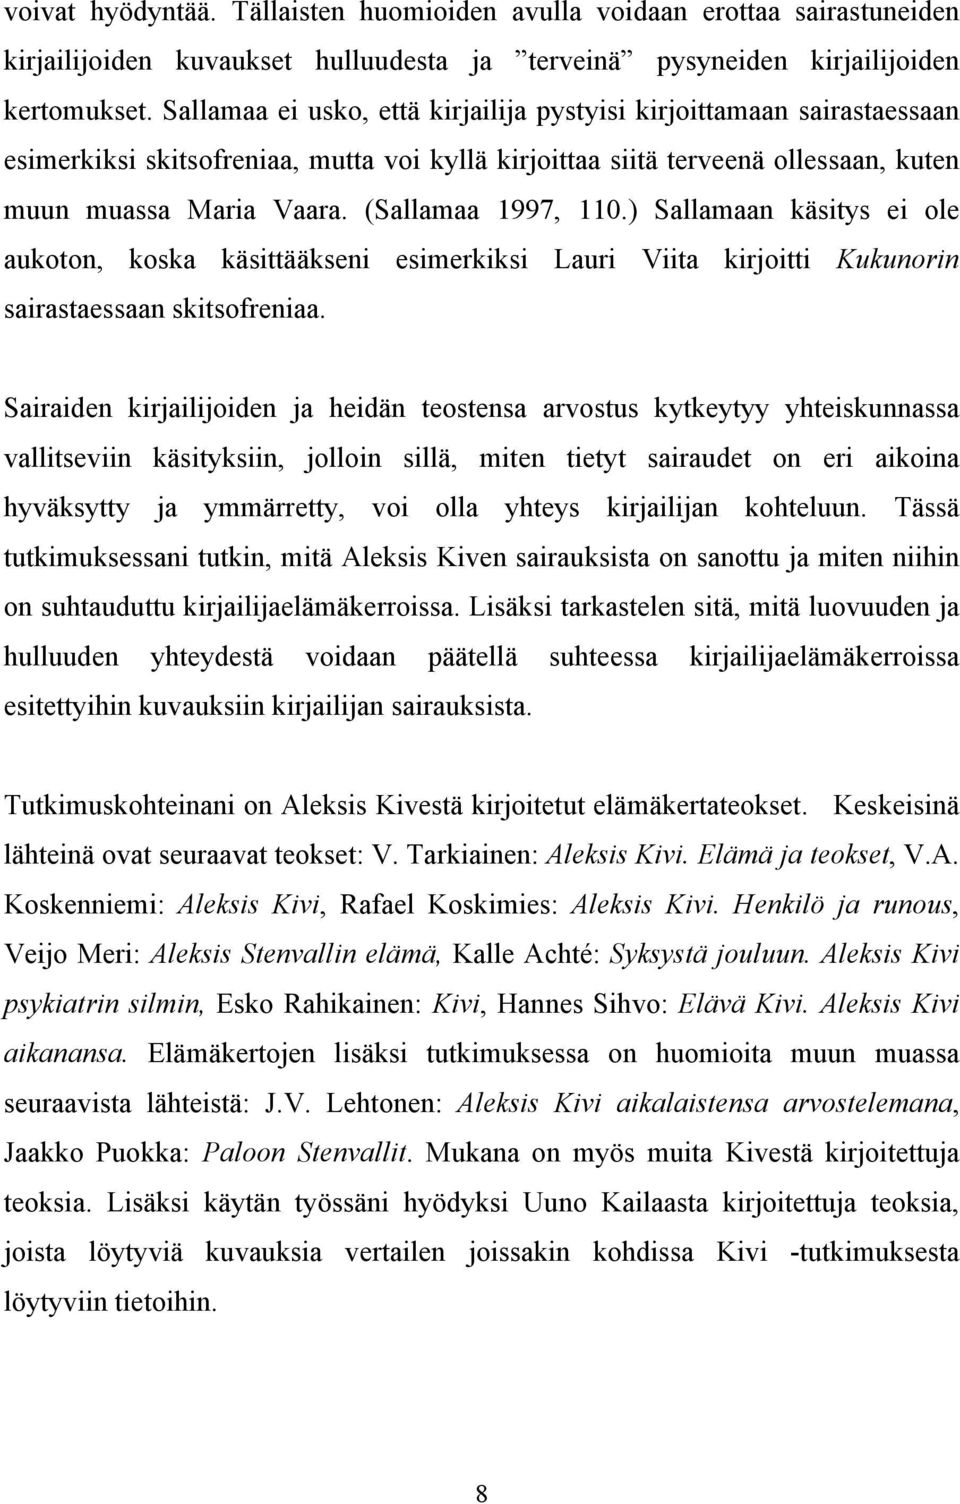 (Sallamaa 1997, 110.) Sallamaan käsitys ei ole aukoton, koska käsittääkseni esimerkiksi Lauri Viita kirjoitti Kukunorin sairastaessaan skitsofreniaa.